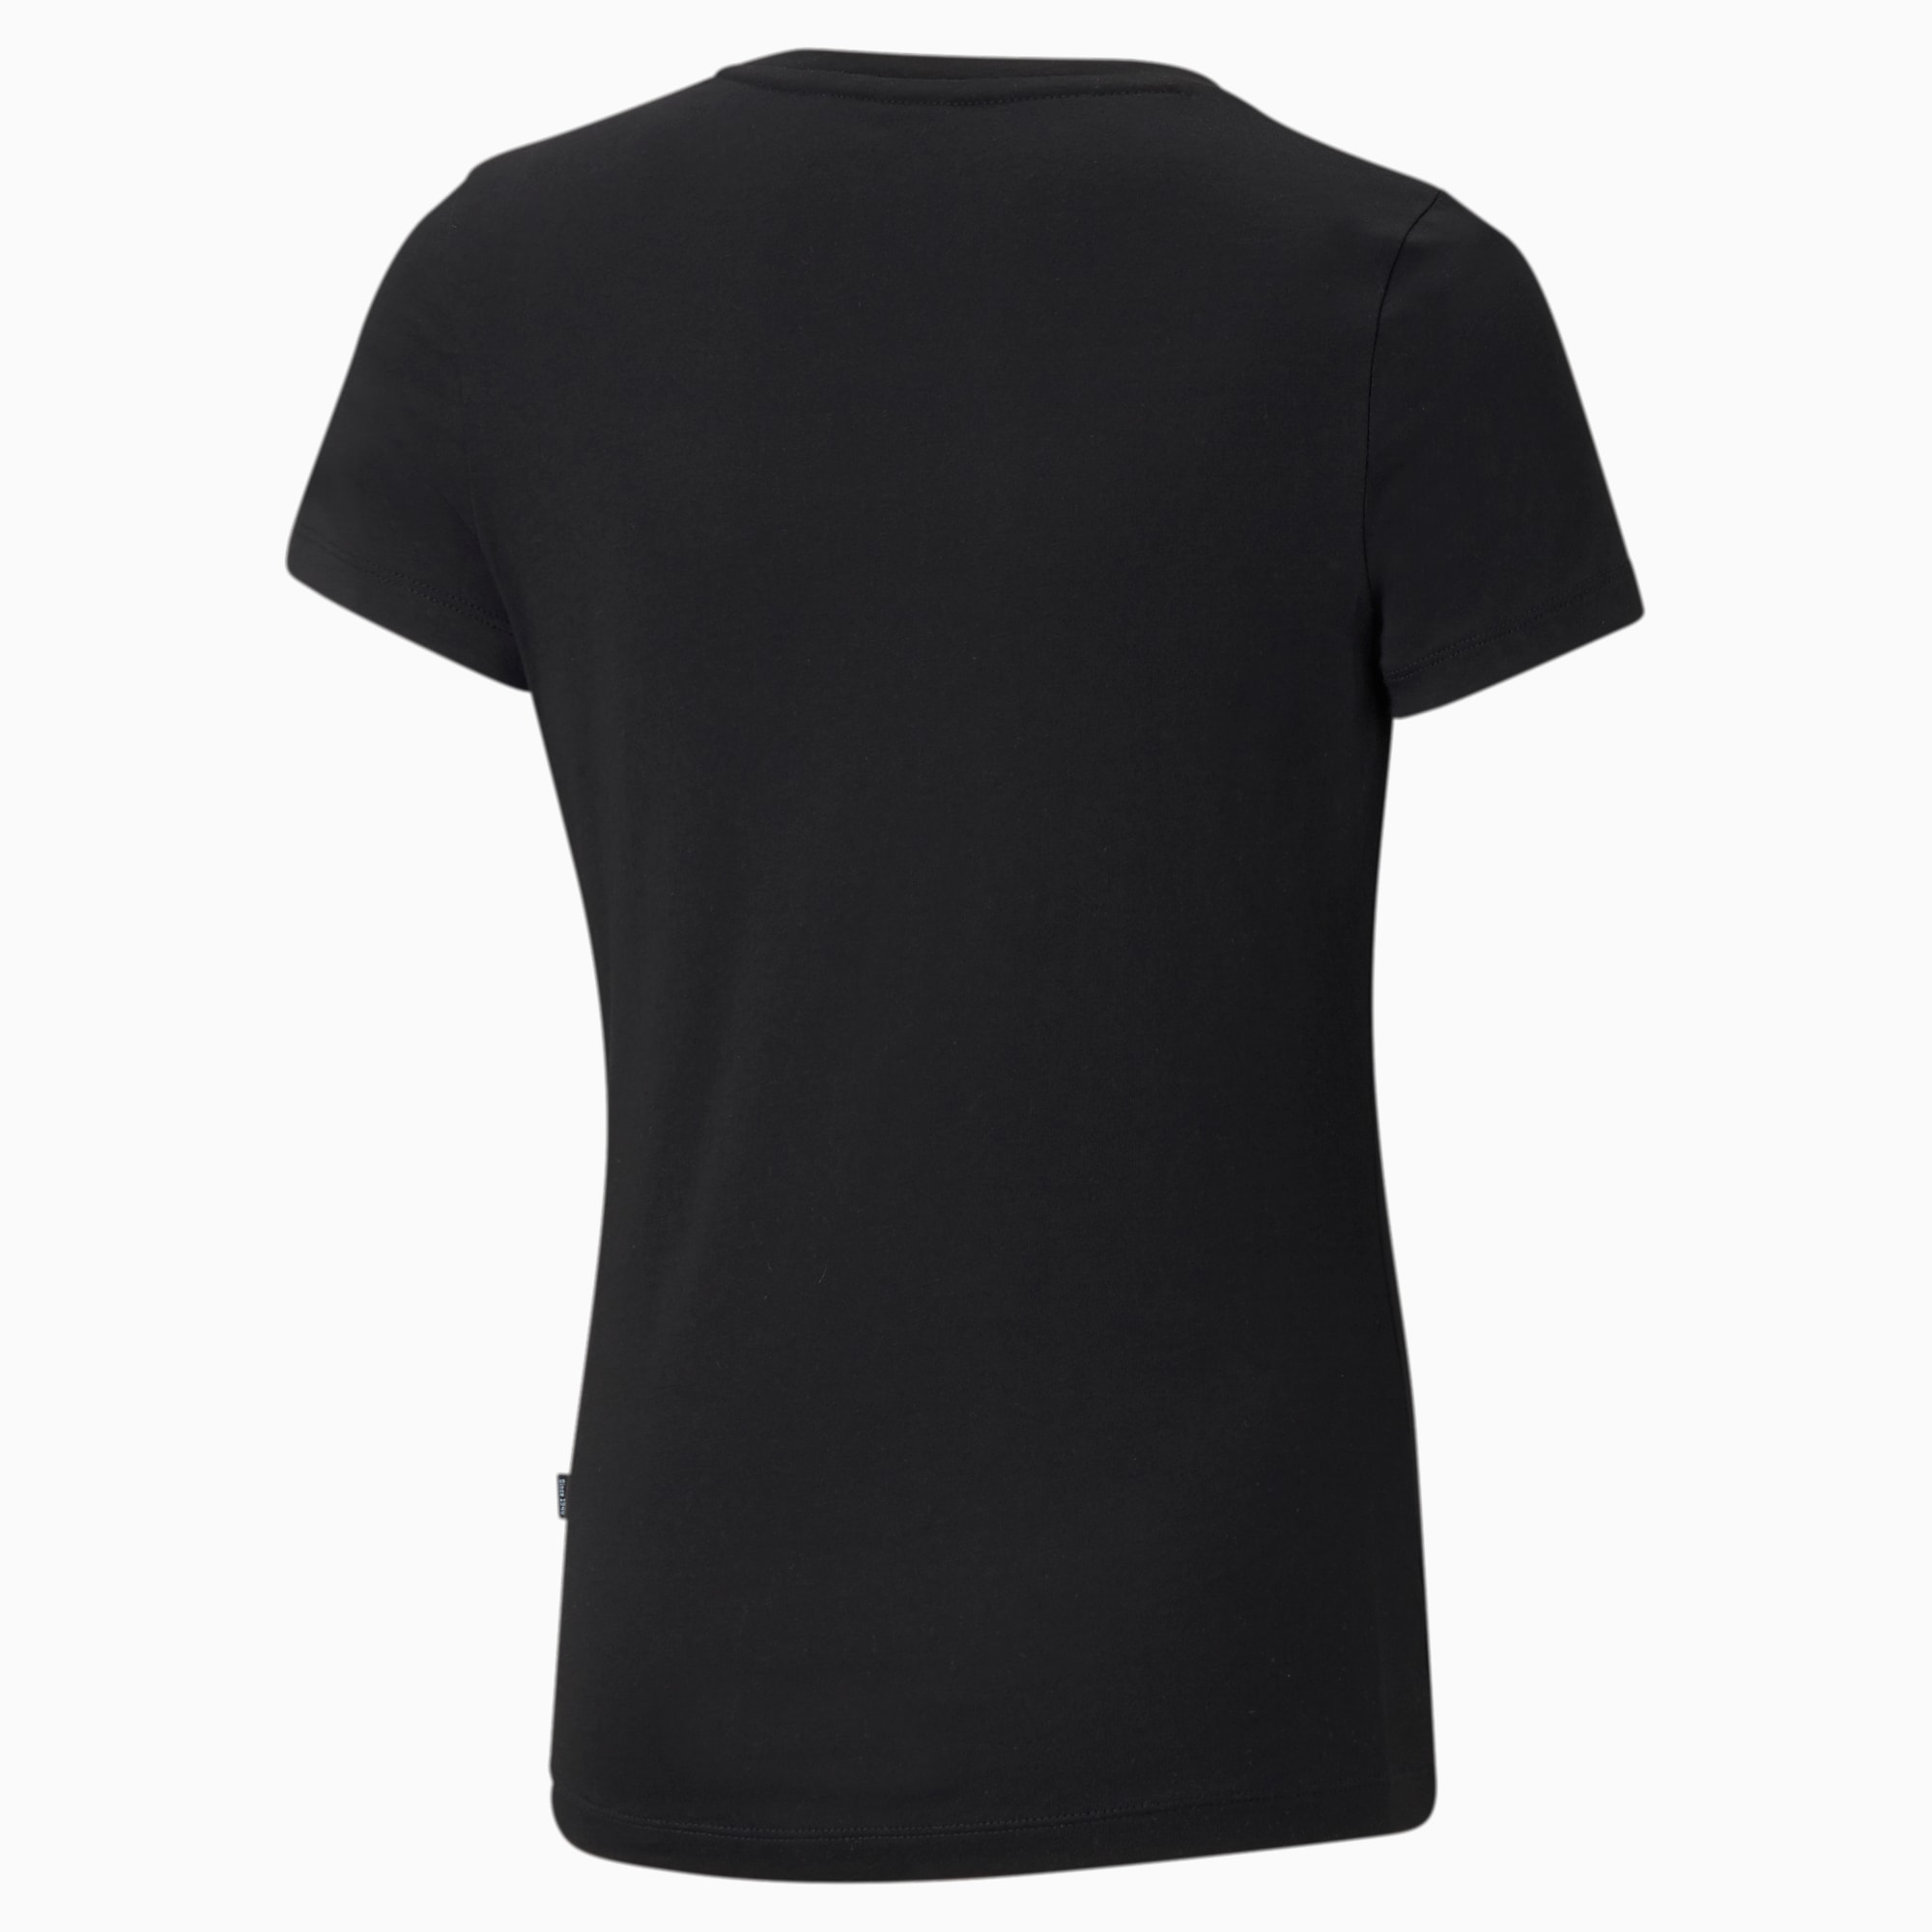 PUMA Essentials Jugend T-Shirt Mit Logo Für Kinder, Schwarz, Größe: 176, Kleidung